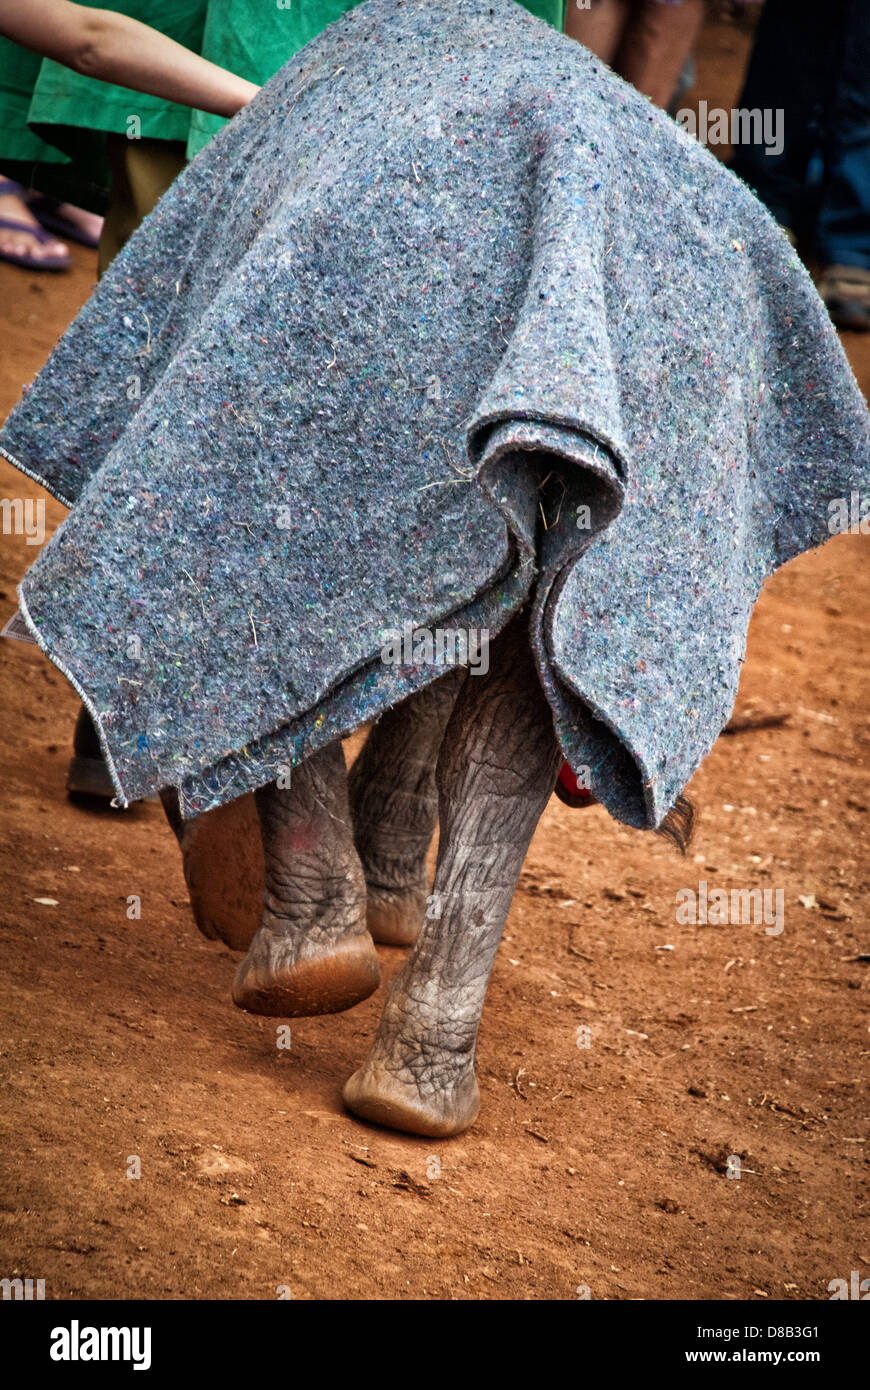 Vista posteriore di un vitello elefante, Loxodonta africana, con una coperta che protegge la sua pelle delicata al Sheldrick Elephant Orphanage, Nairobi Foto Stock